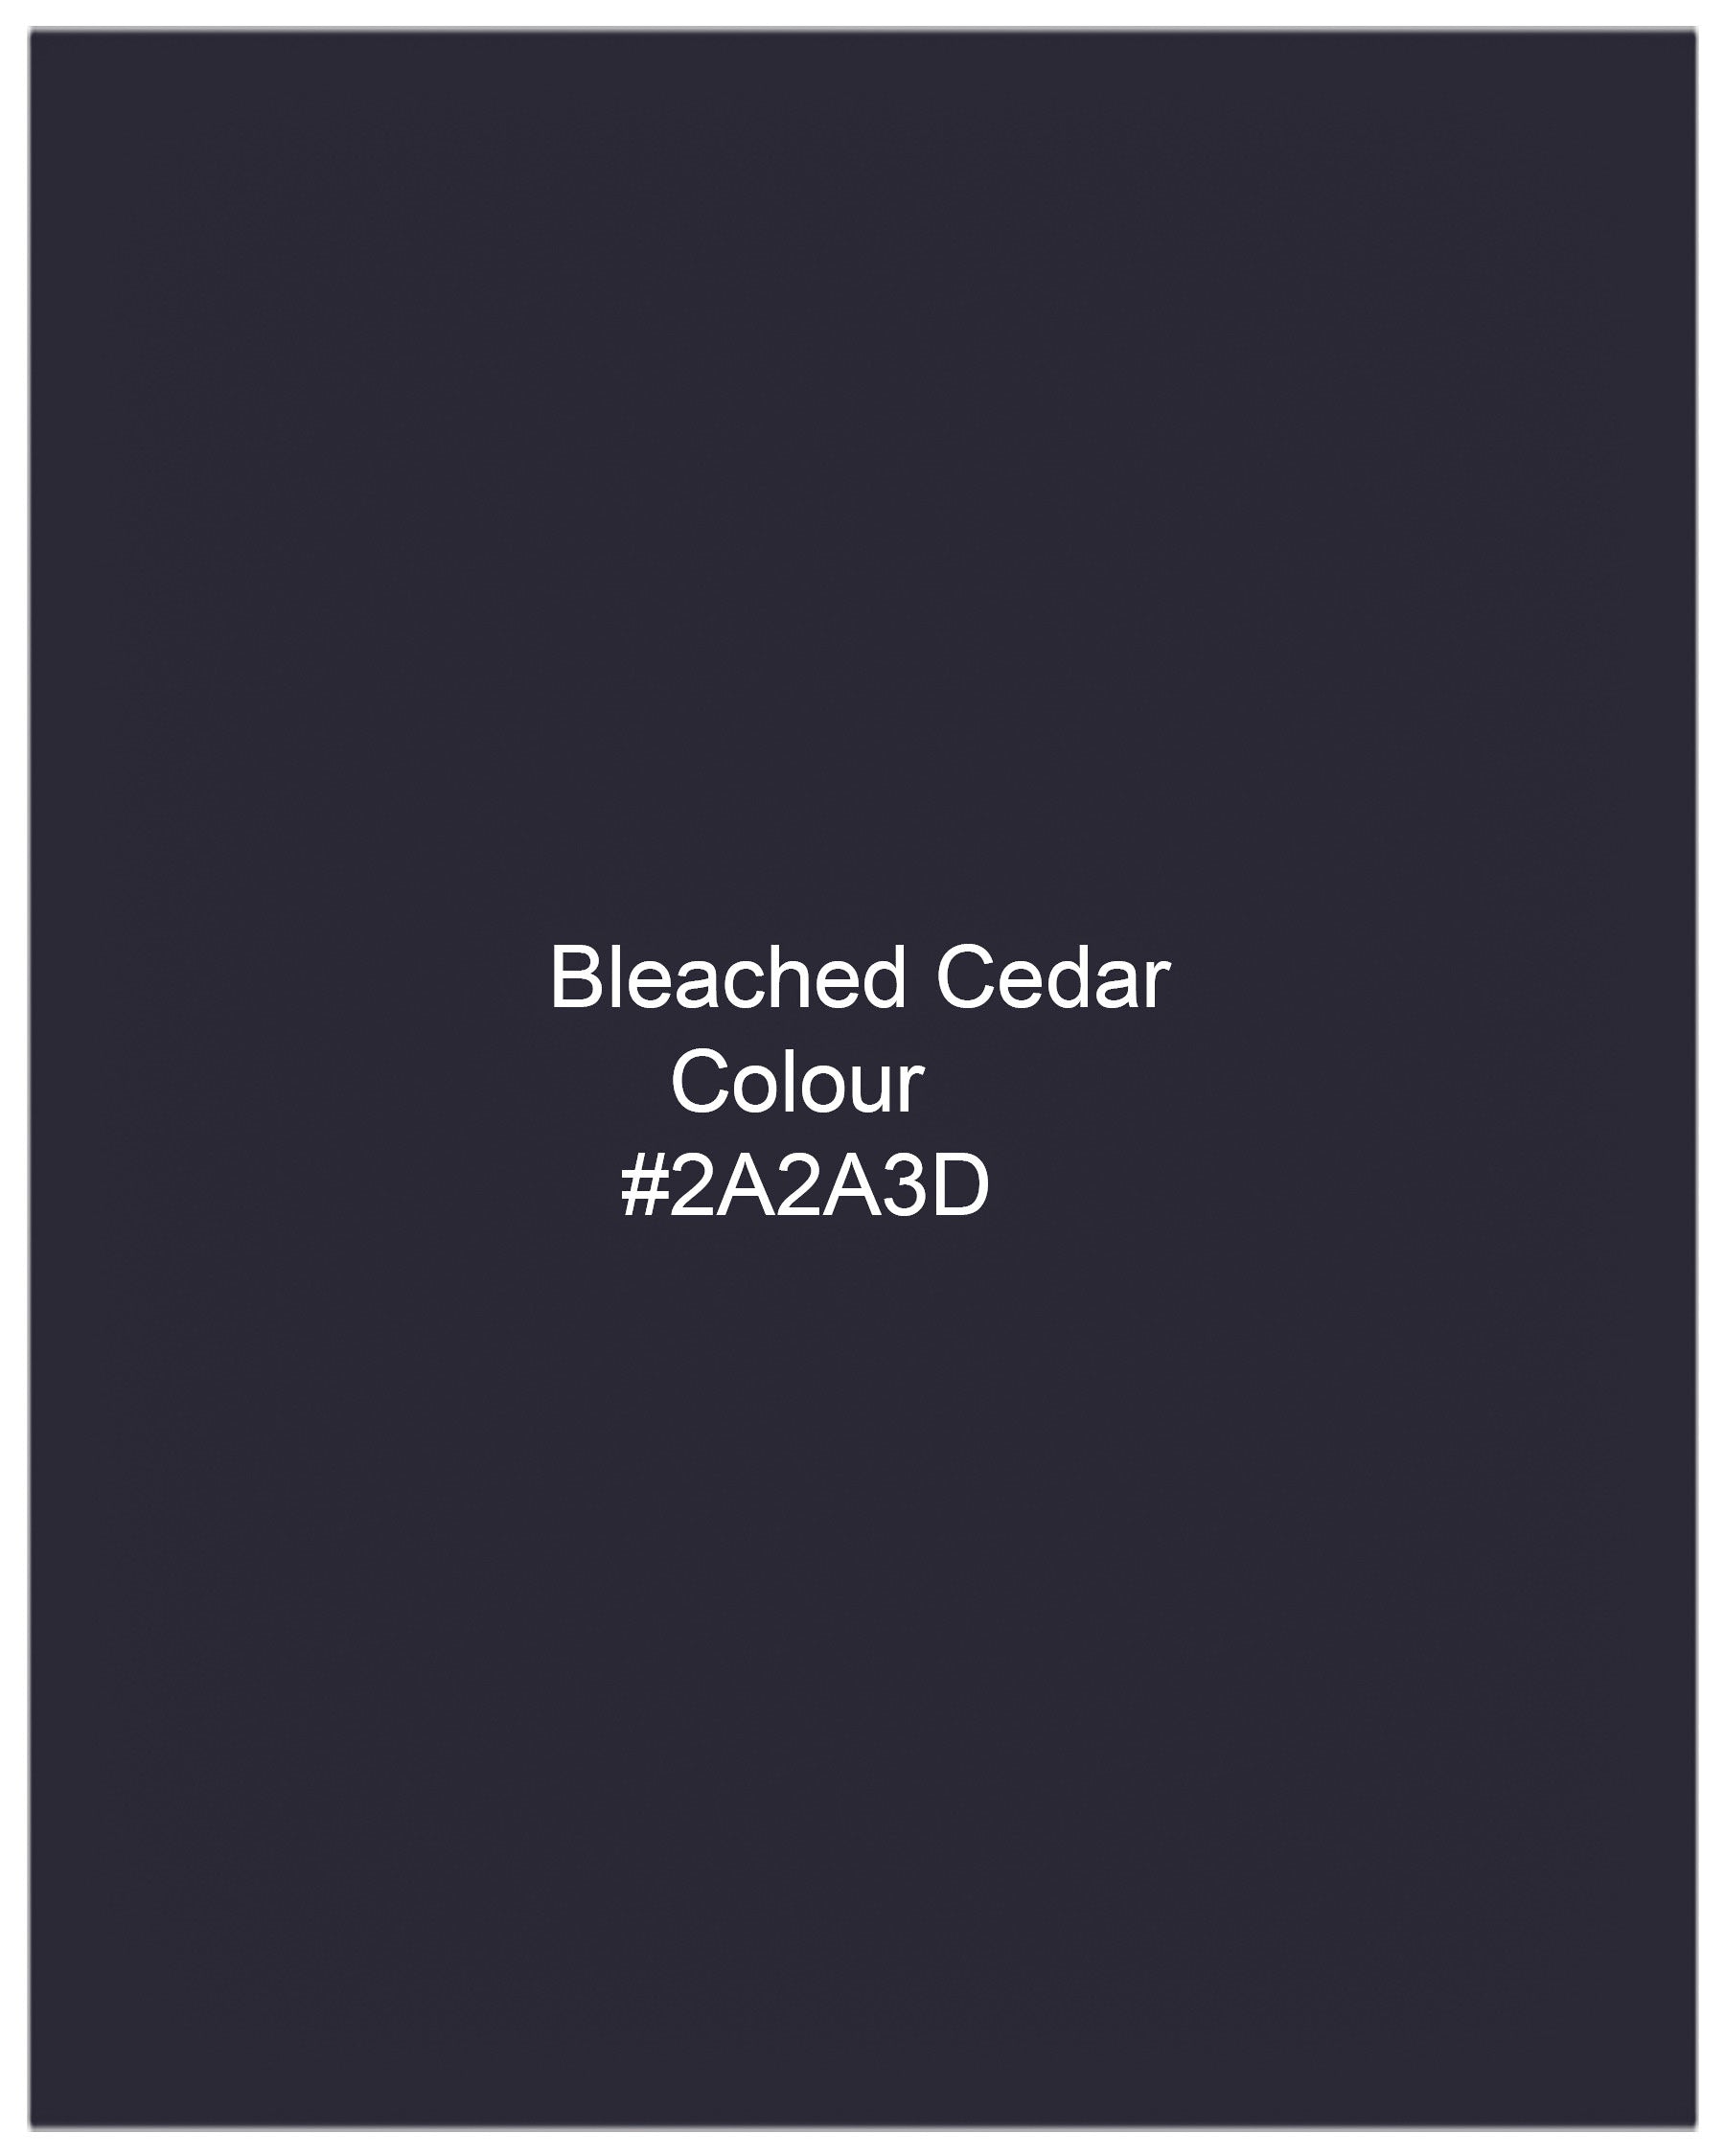 Bleached Cedar Navy Blue Pant T2005-28, T2005-30, T2005-32, T2005-34, T2005-36, T2005-38, T2005-40, T2005-42, T2005-44